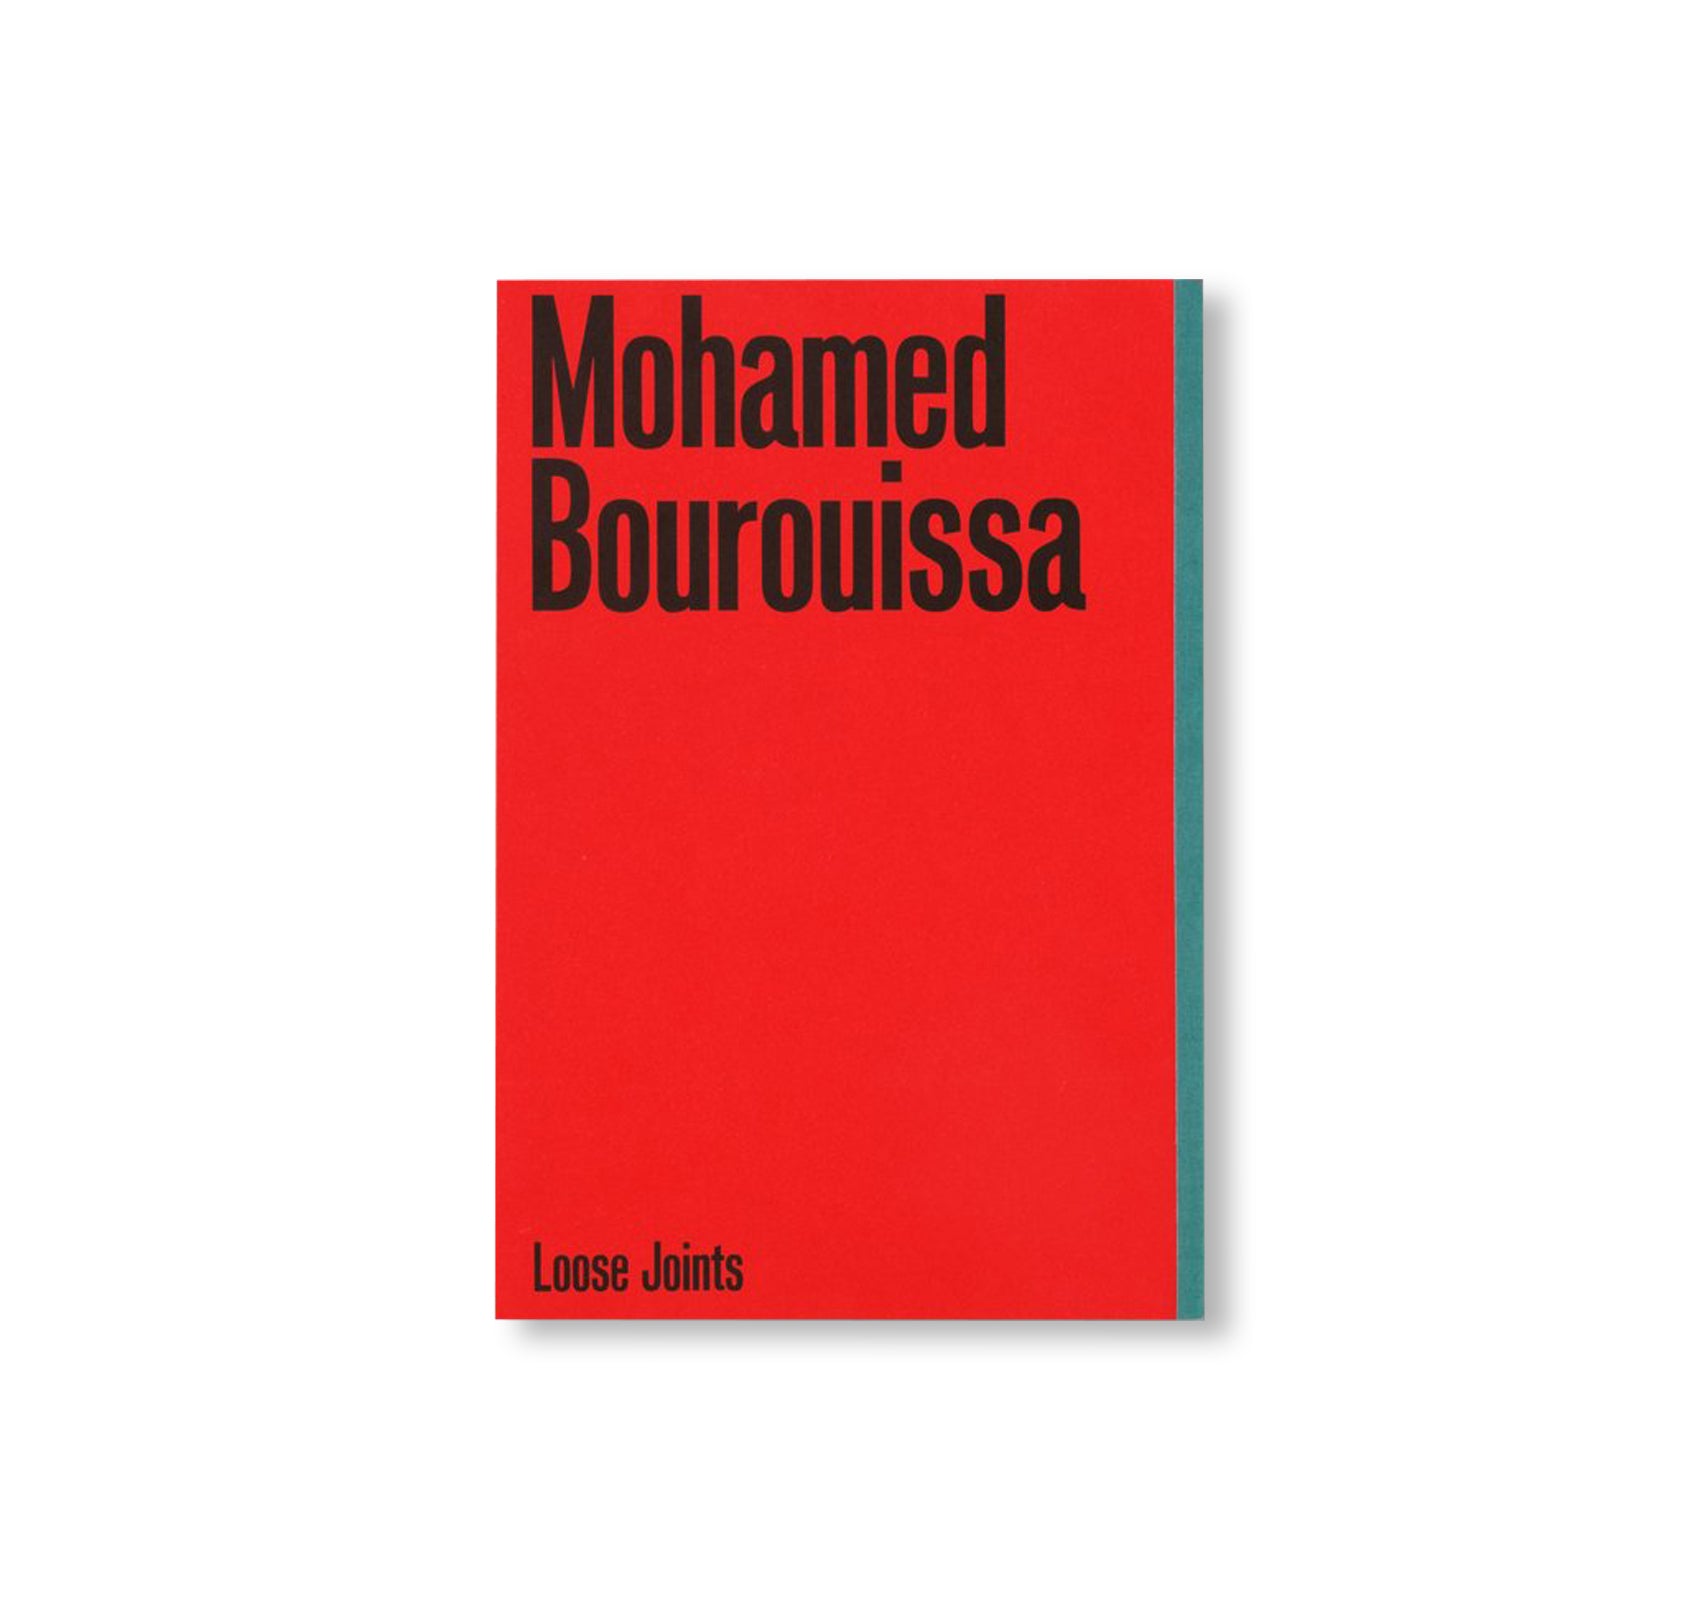 PÉRIPHÉRIQUE by Mohamed Bourouissa